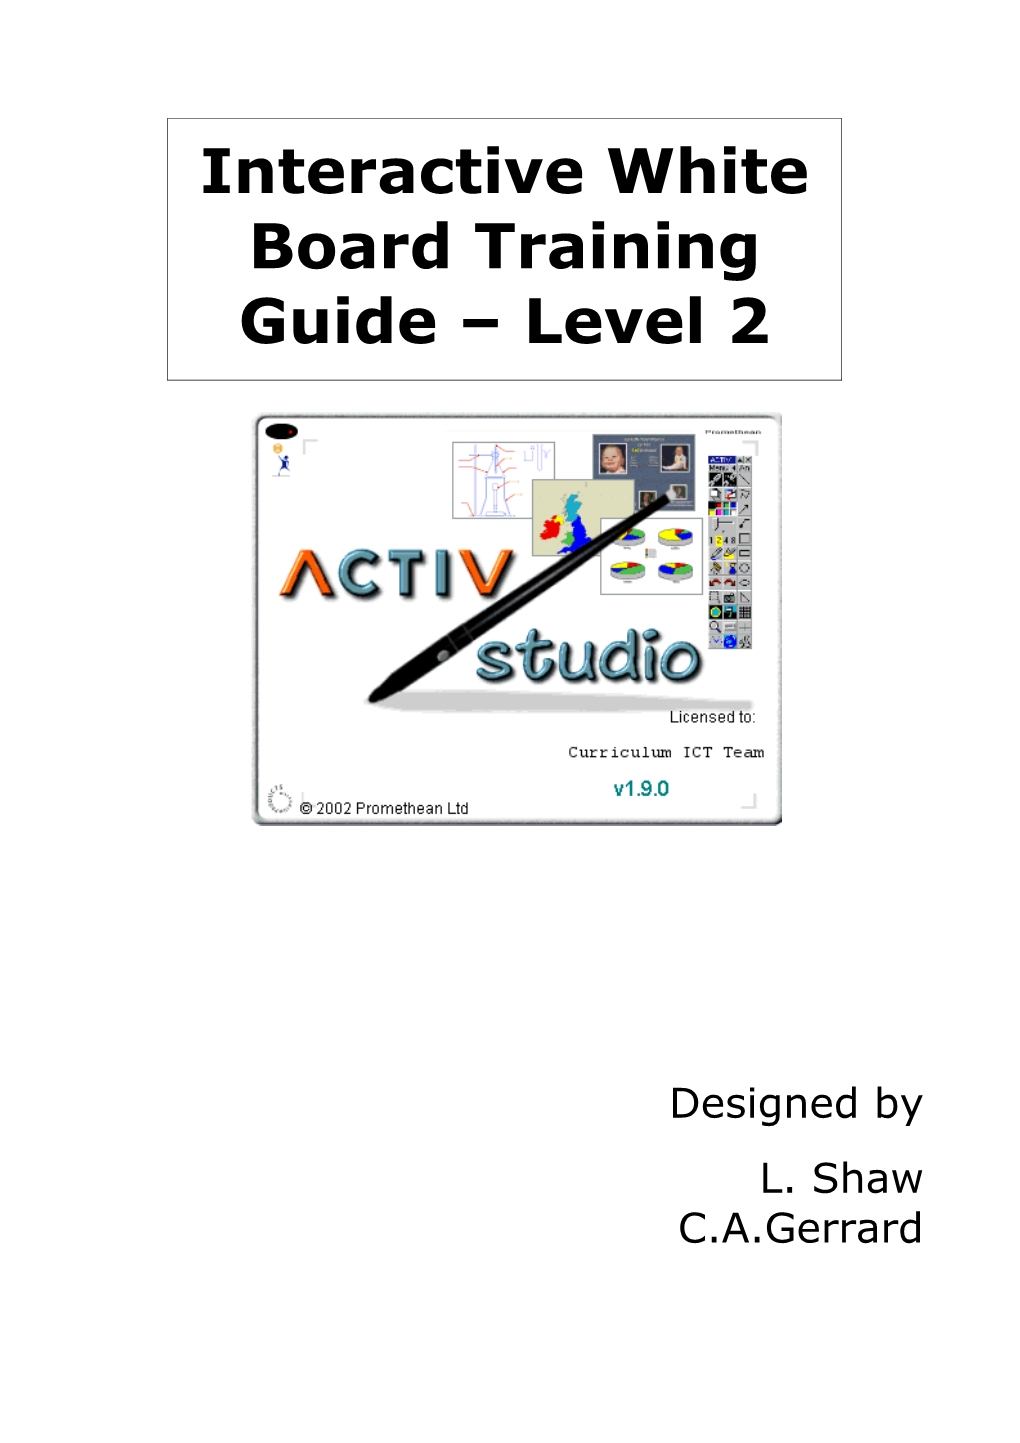 Promethean Interactive White Board Training Guide